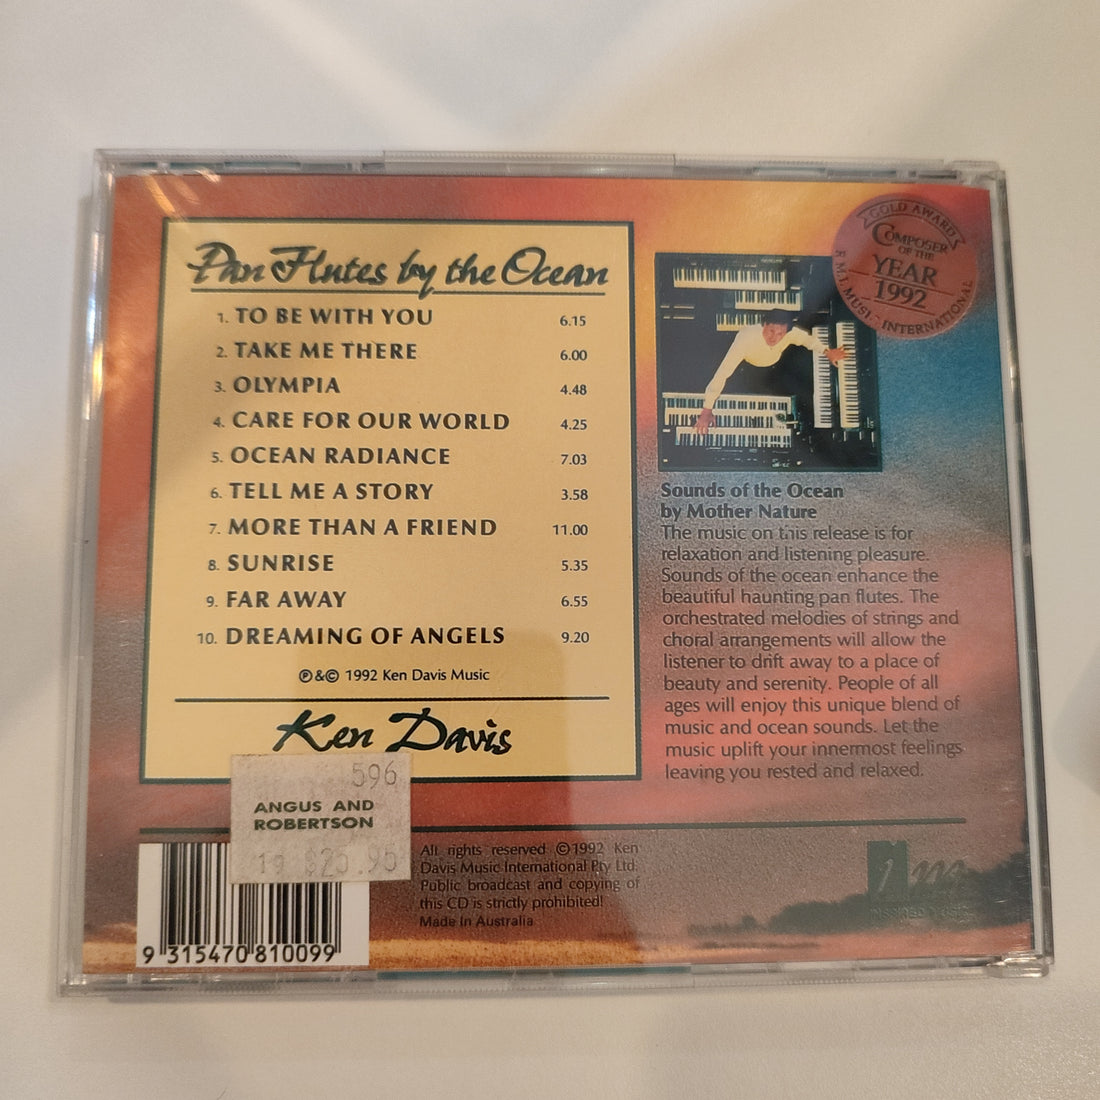 Ken Davis (5) - Pan Flutes By The Ocean  (CD) (VG+)